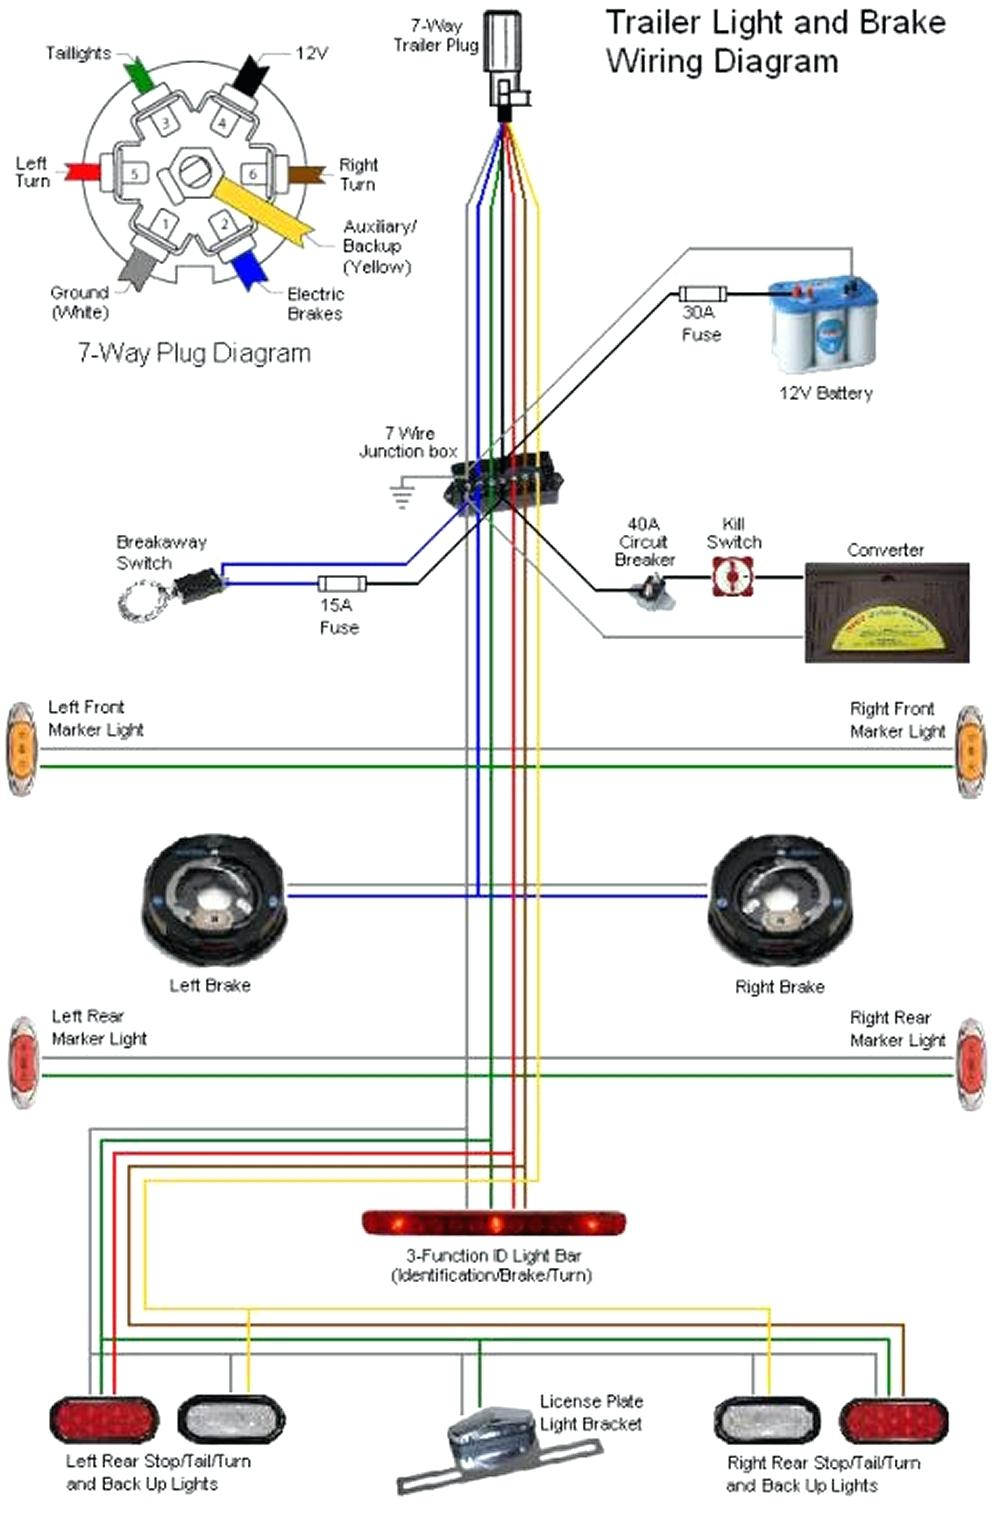 Trailer Emergency Brake Wiring Diagram